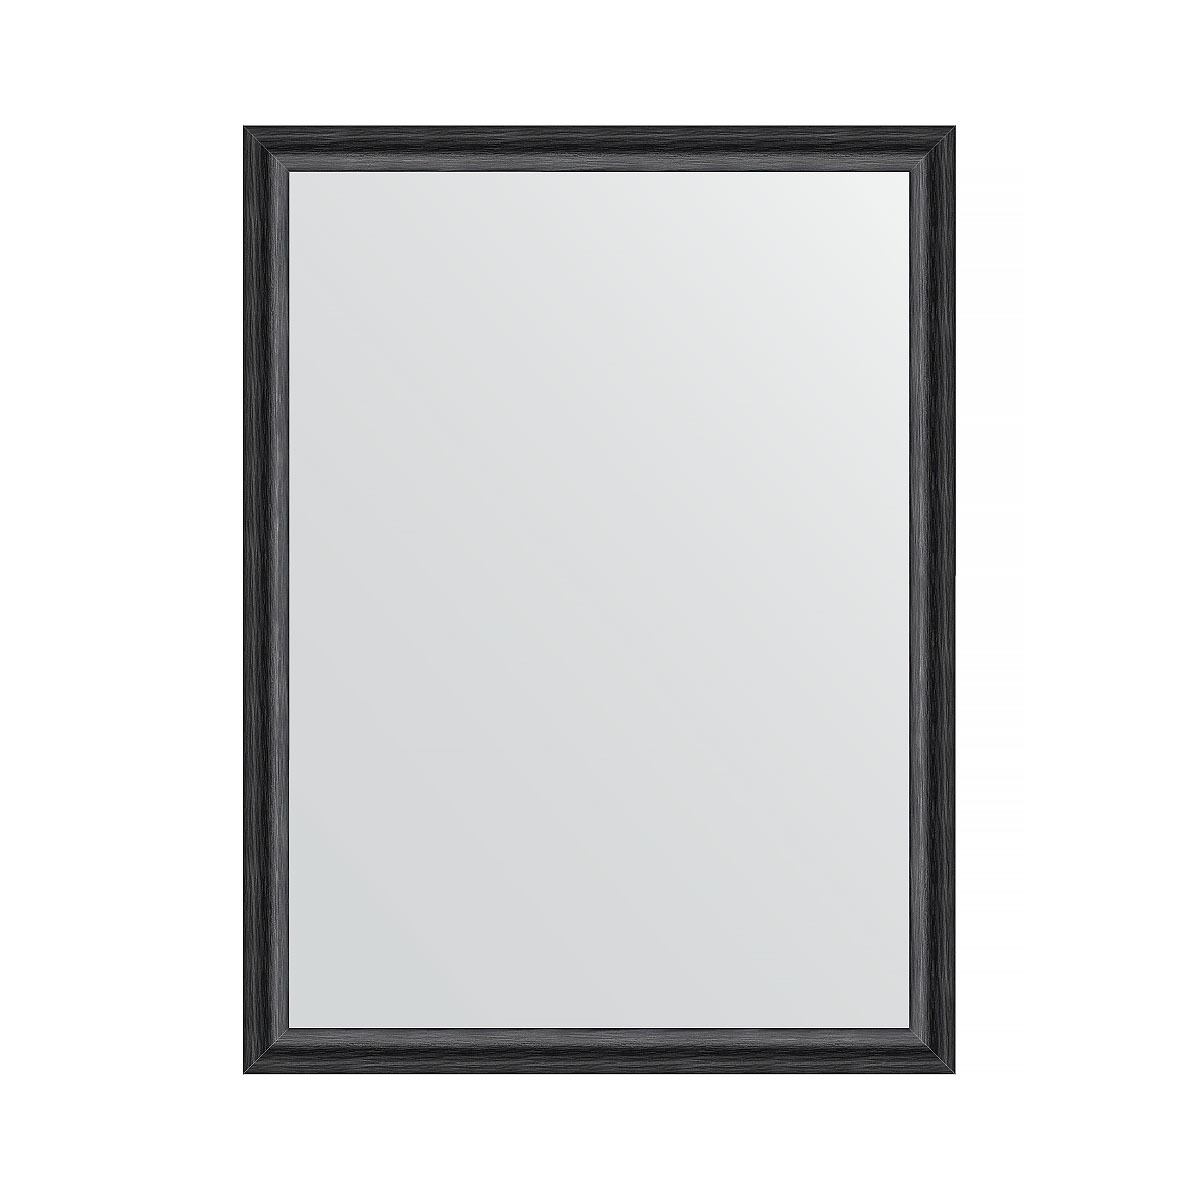 Зеркало в багетной раме Evoform черный дуб 37 мм 60х80 см зеркало evoform в багетной раме 57х107см bx 0728